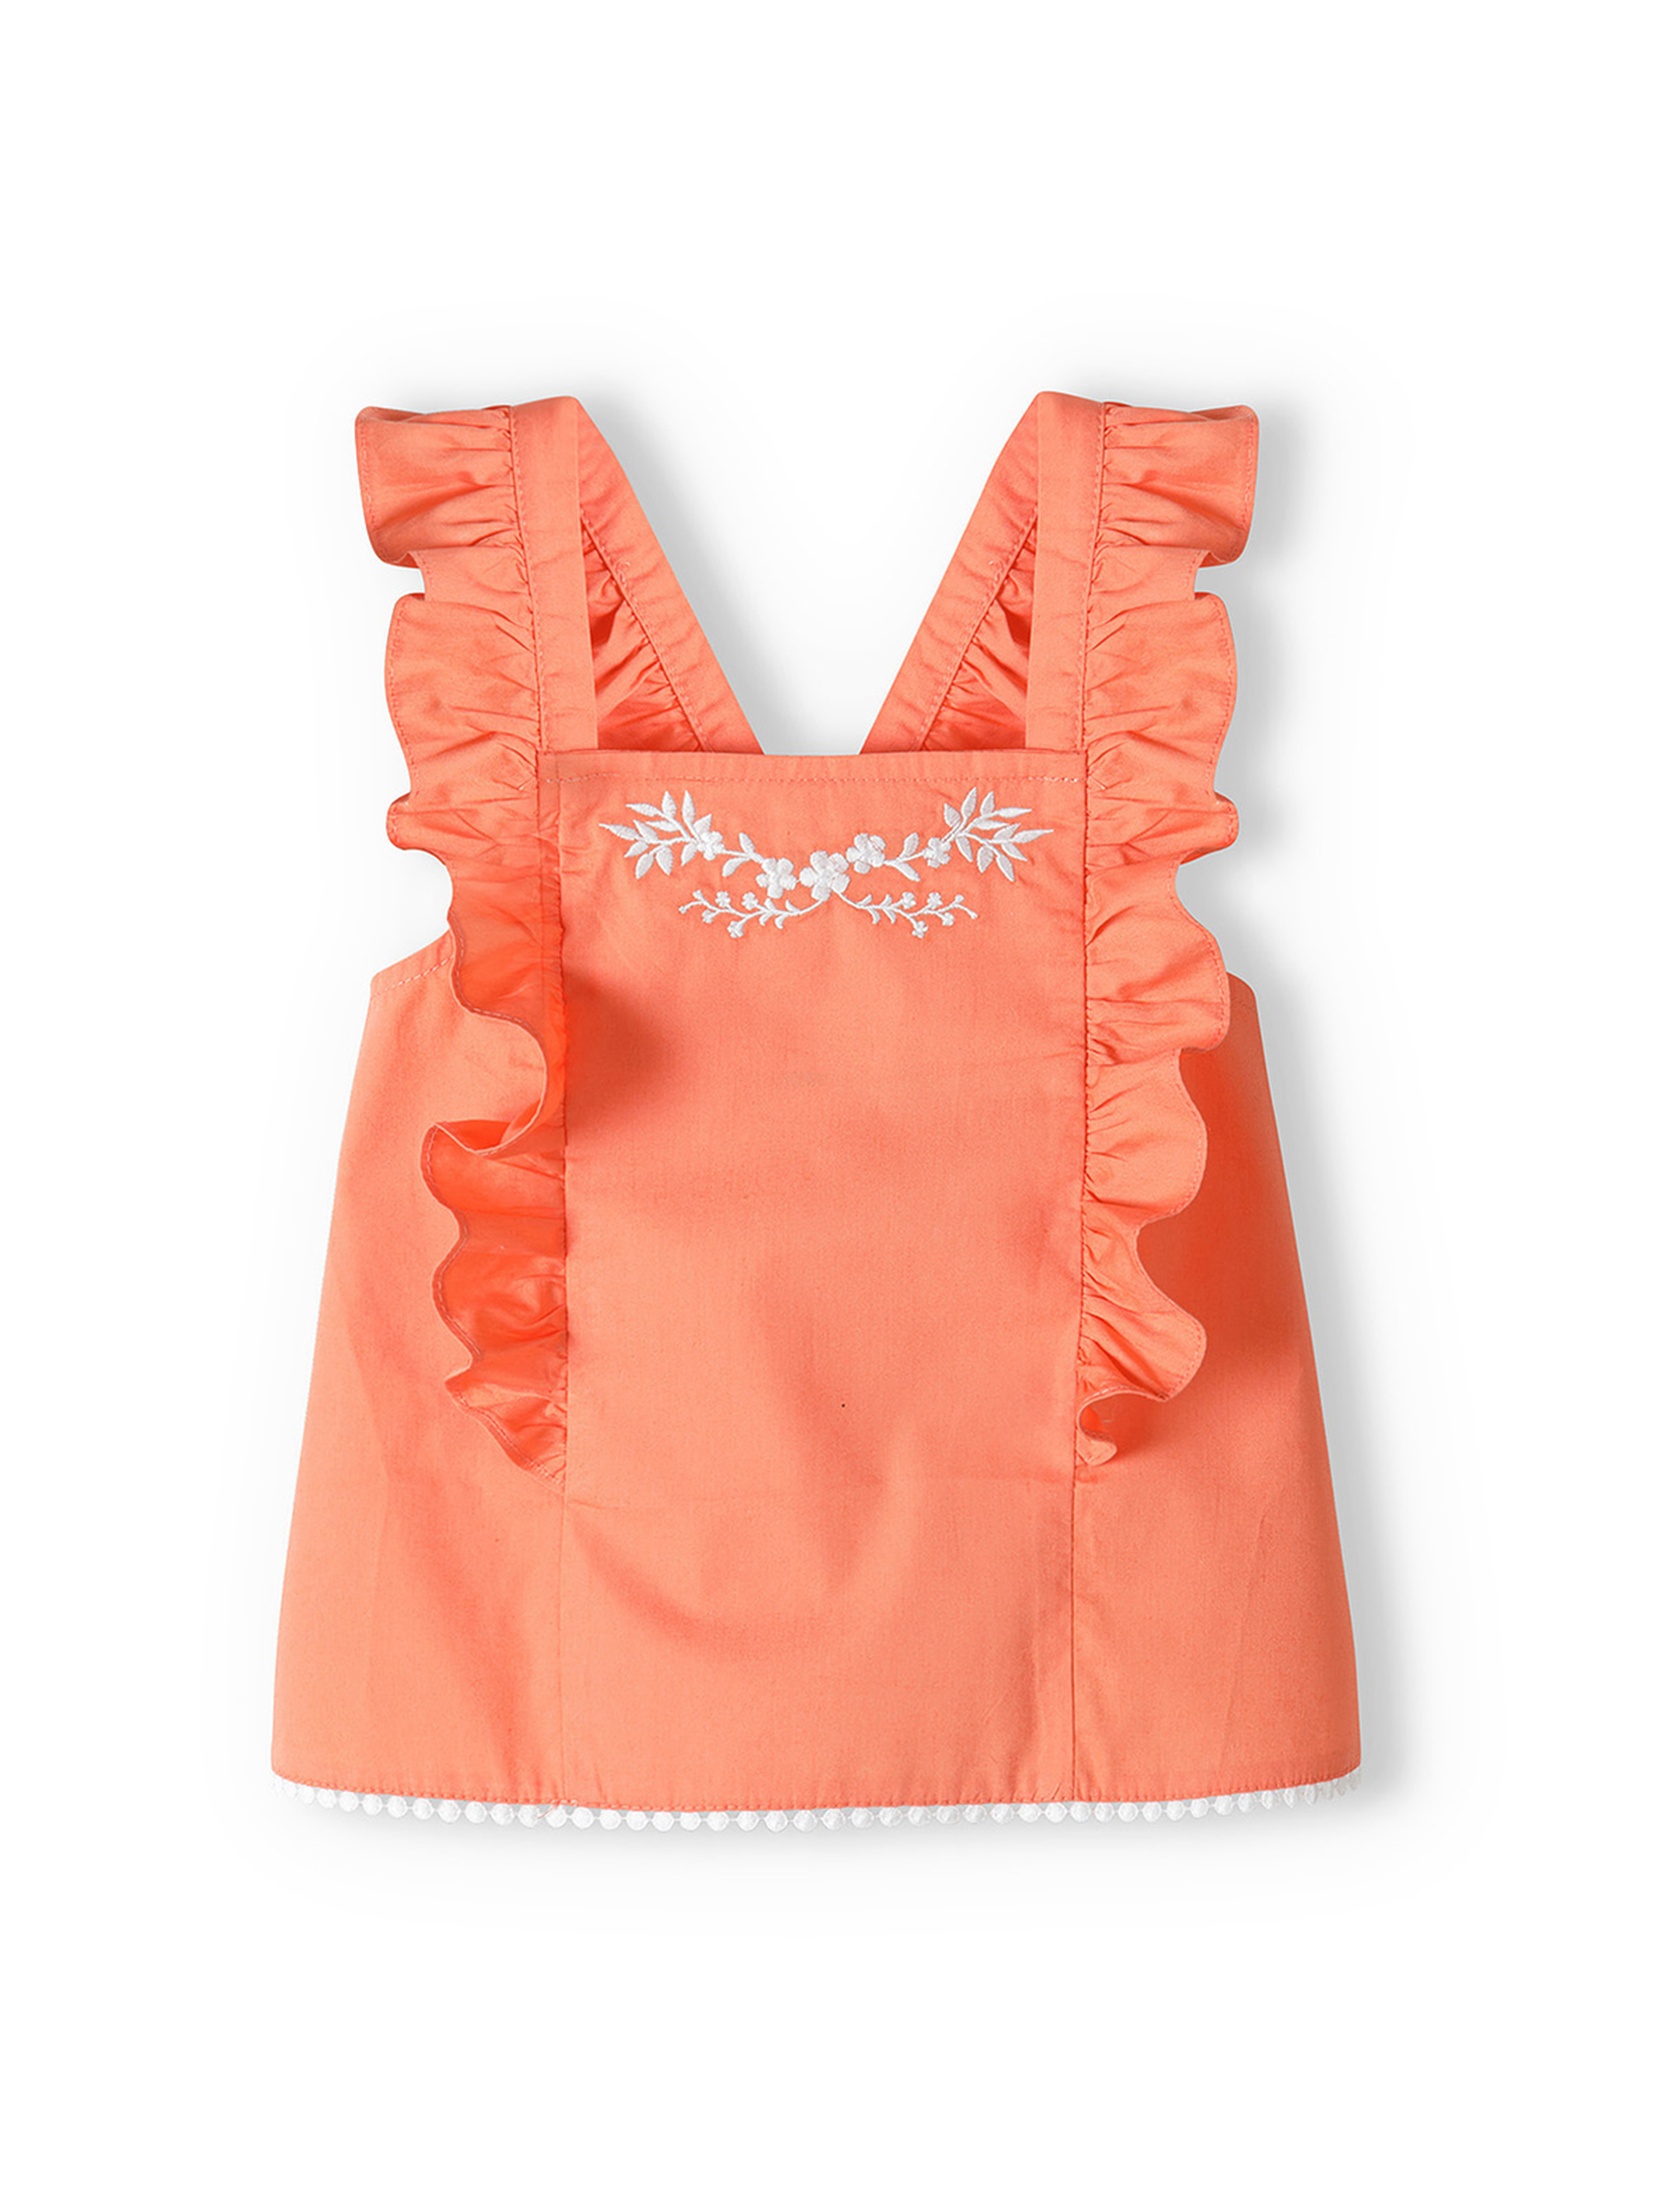 Pomarańczowy komplet niemowlęcy - bluzka na ramiączkach + spodenki